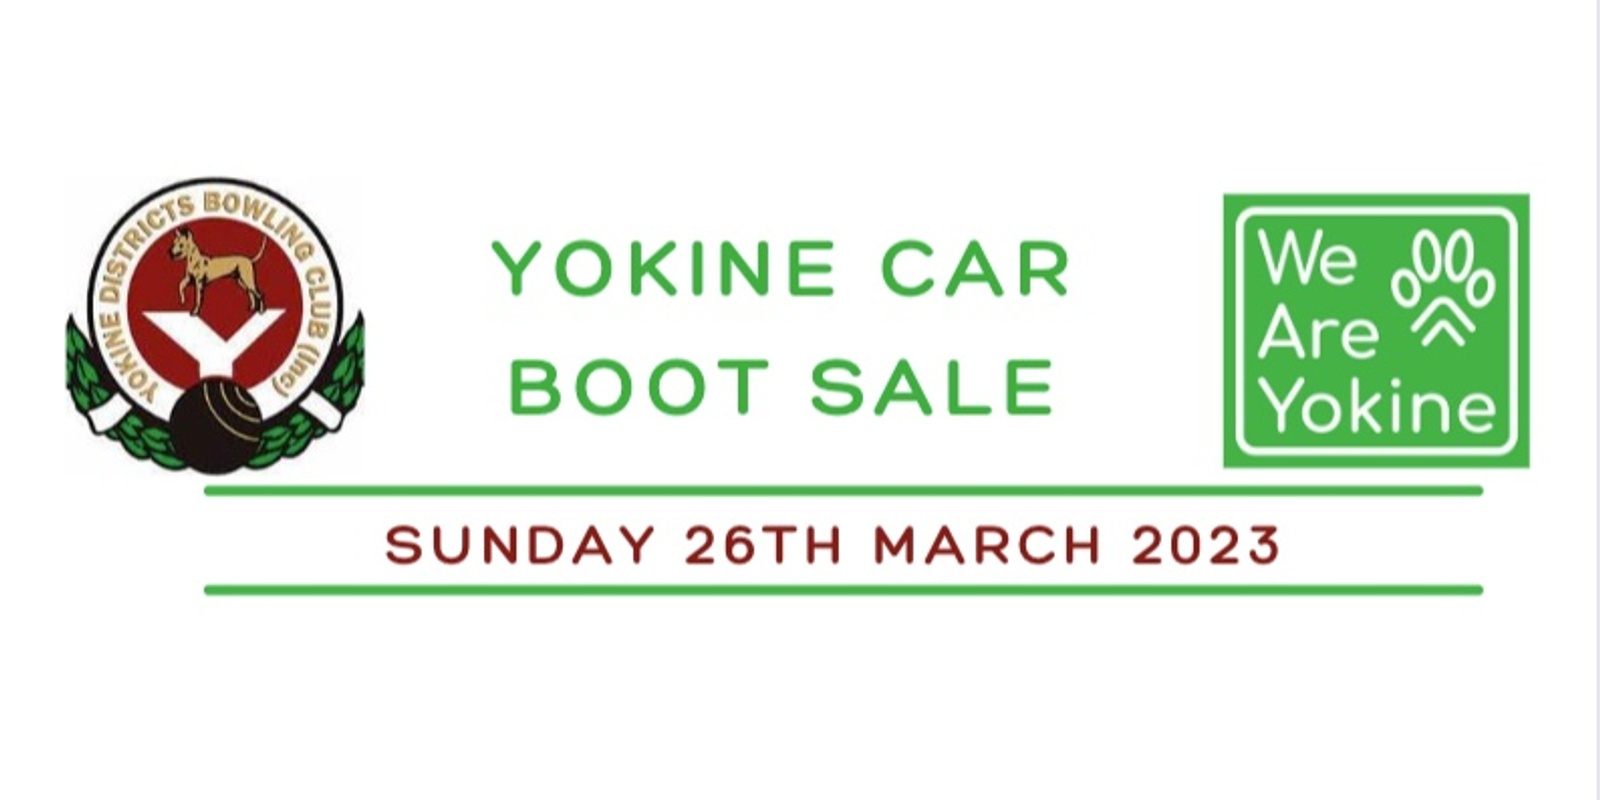 Banner image for Yokine Car Boot Sale March 2023  - Seller Registration